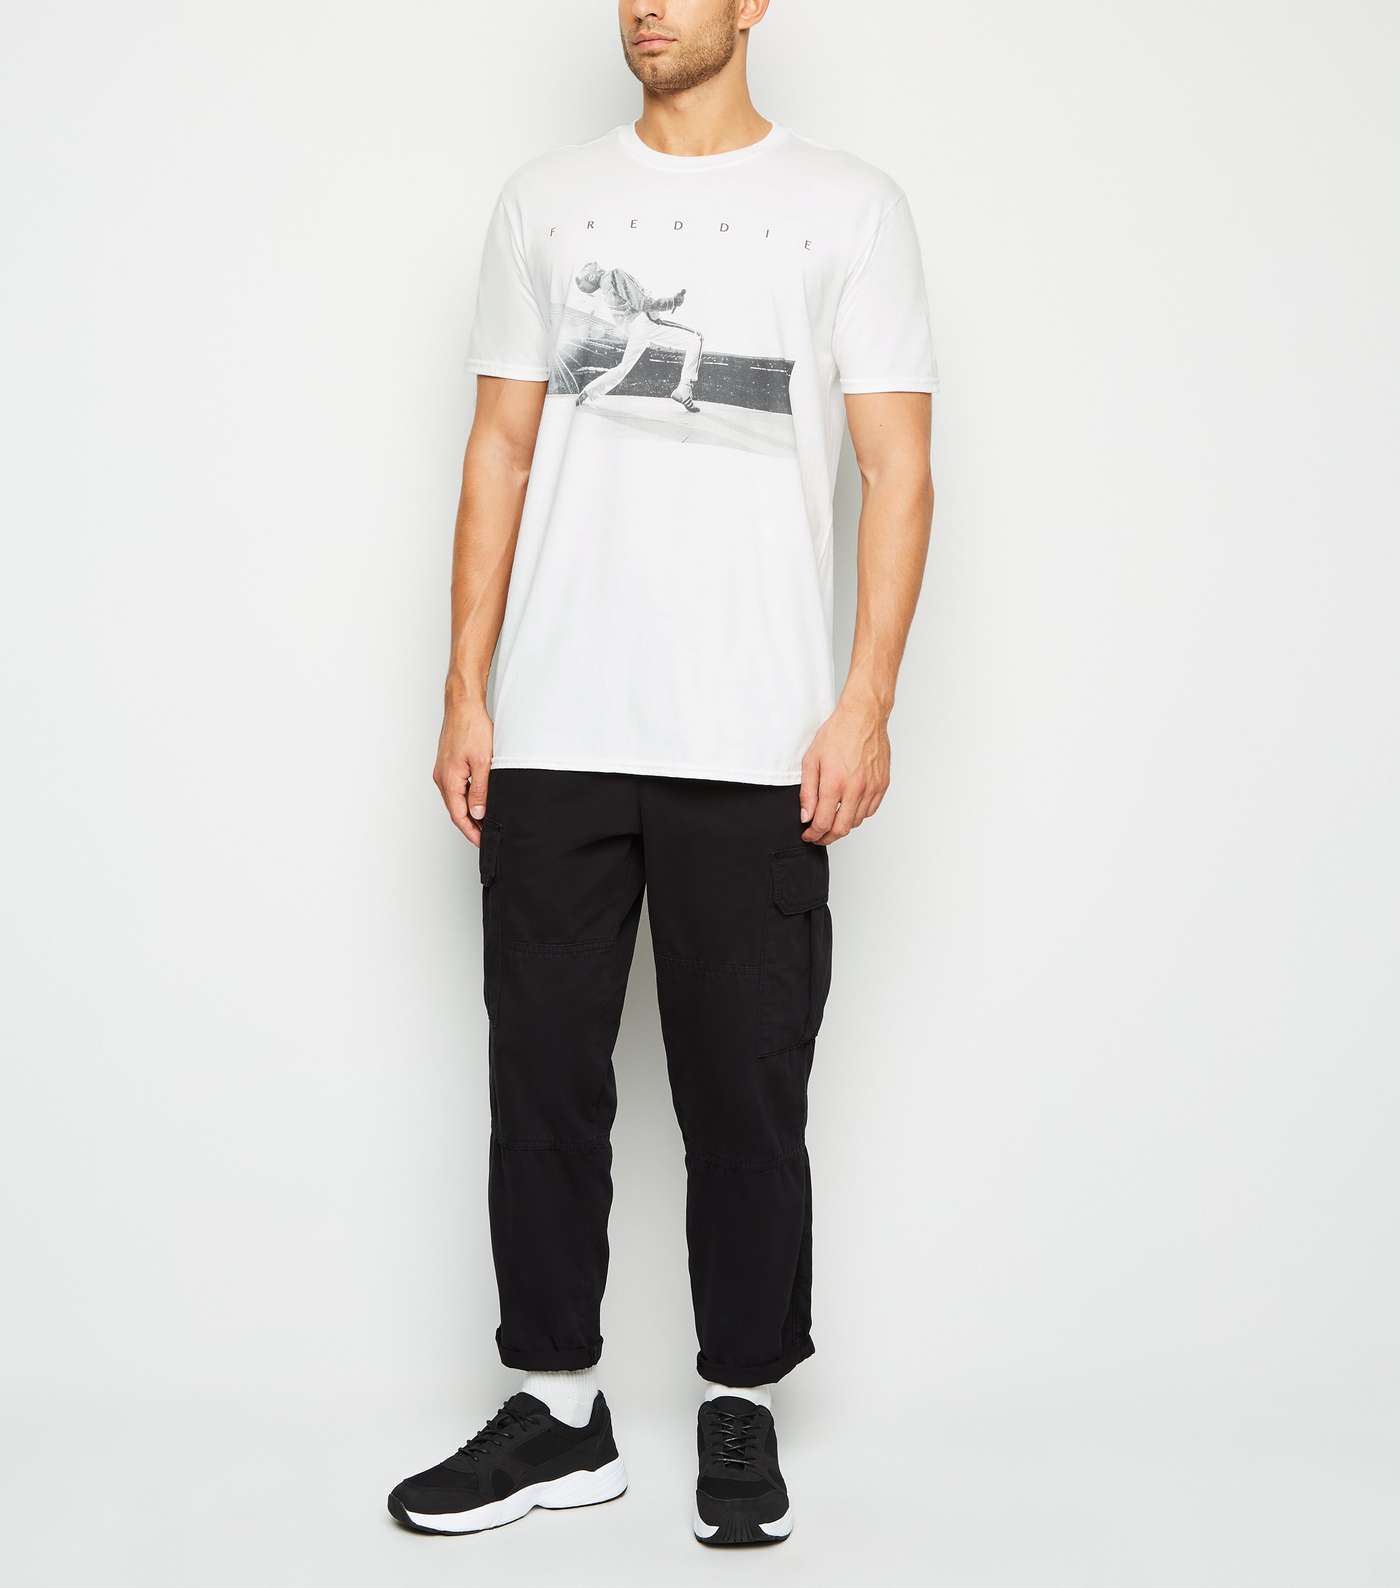 White Oversized Freddie Mercury T-Shirt Image 2